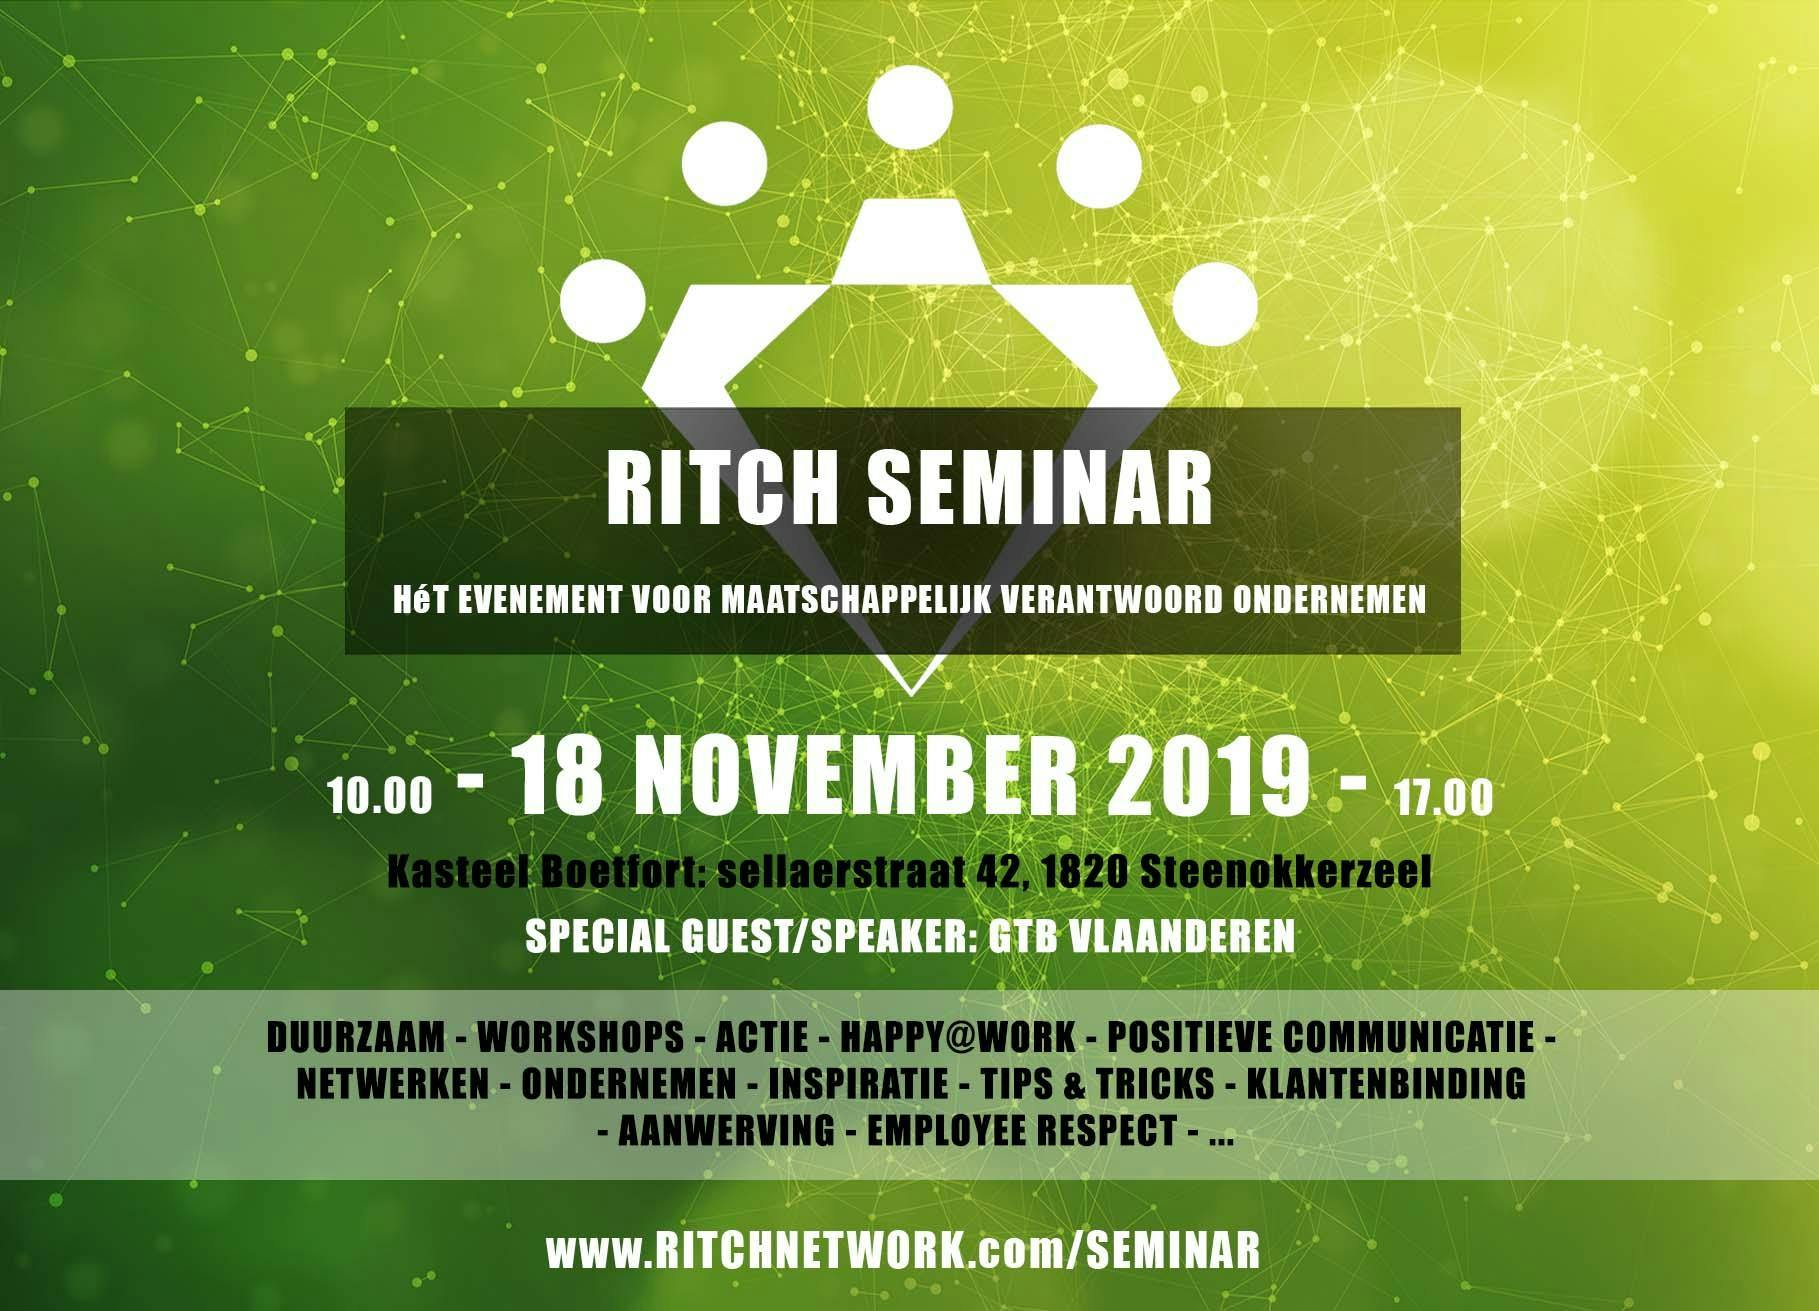 Ritch Seminar (Maatschappelijk Verantwoord / Duurzaam Ondernemen)